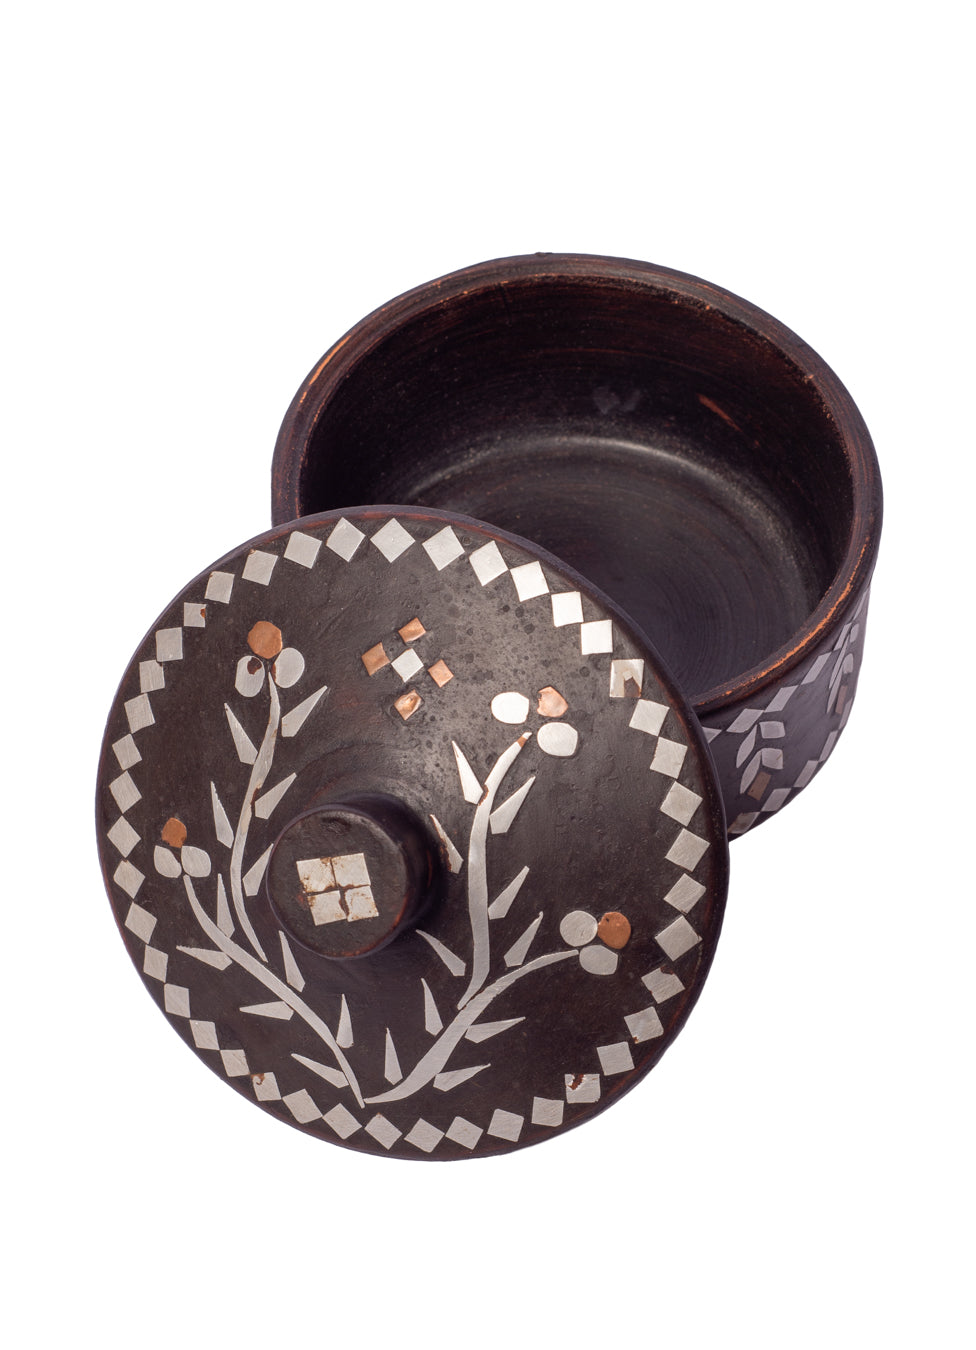 Vintage Inlay Moroccan Ceramic Trinket Box